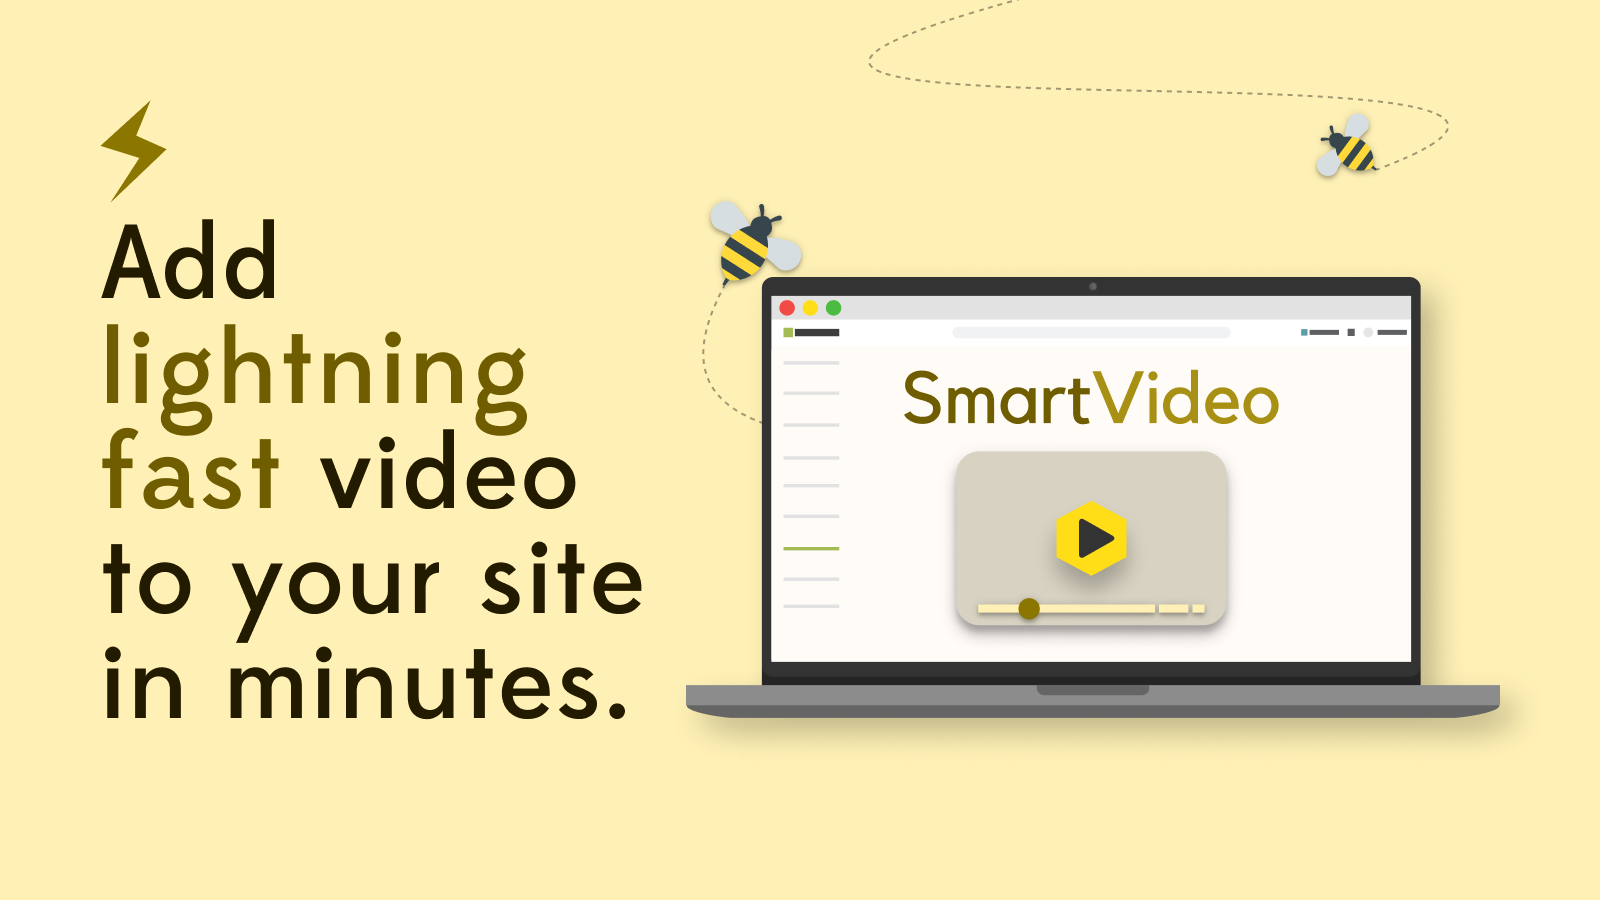 lägg till blixtsnabb video på din webbplats på några minuter med SmartVideo